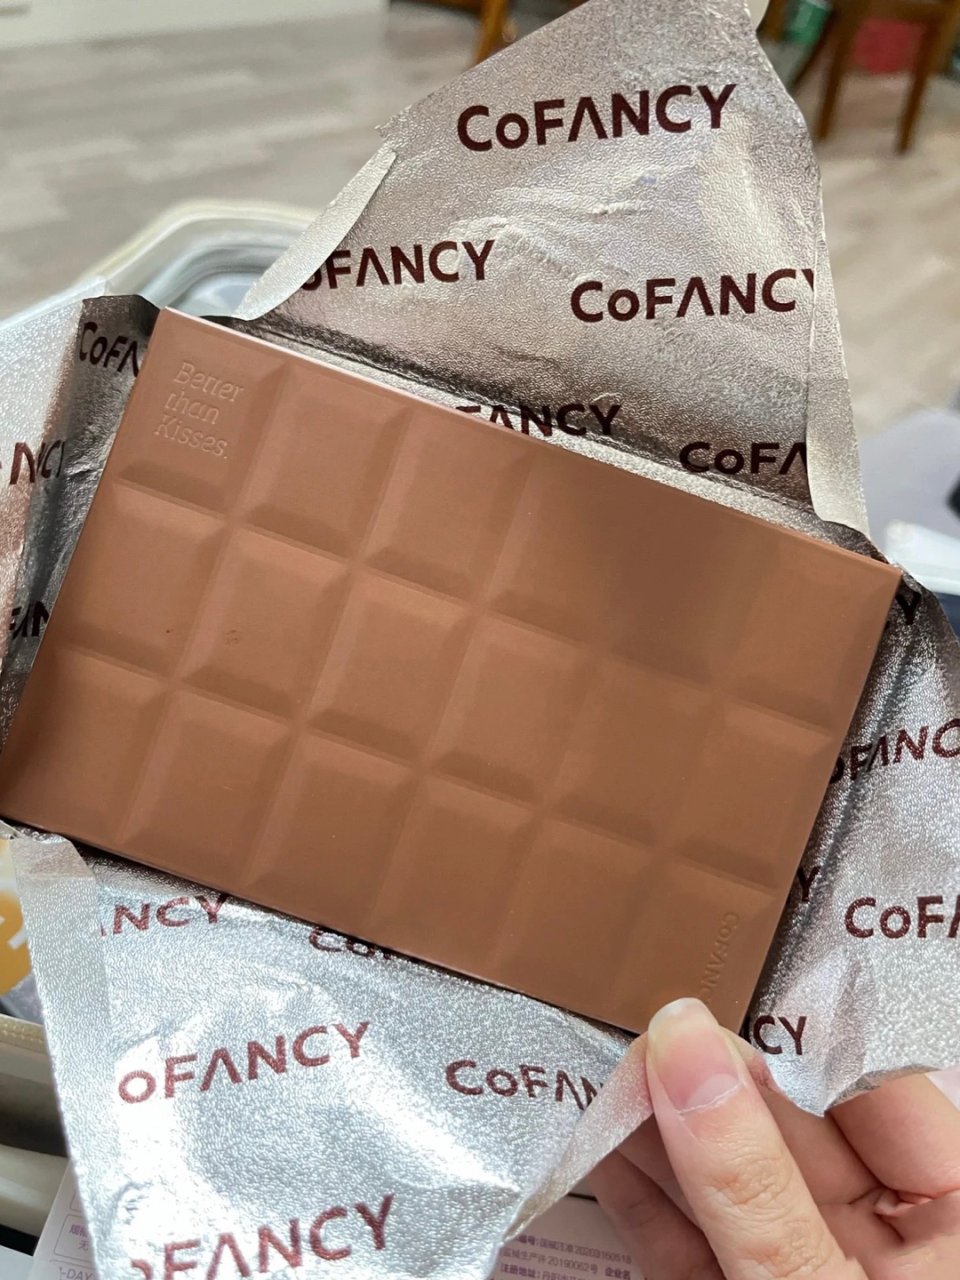 CoFancy巧克力礼盒🎁...